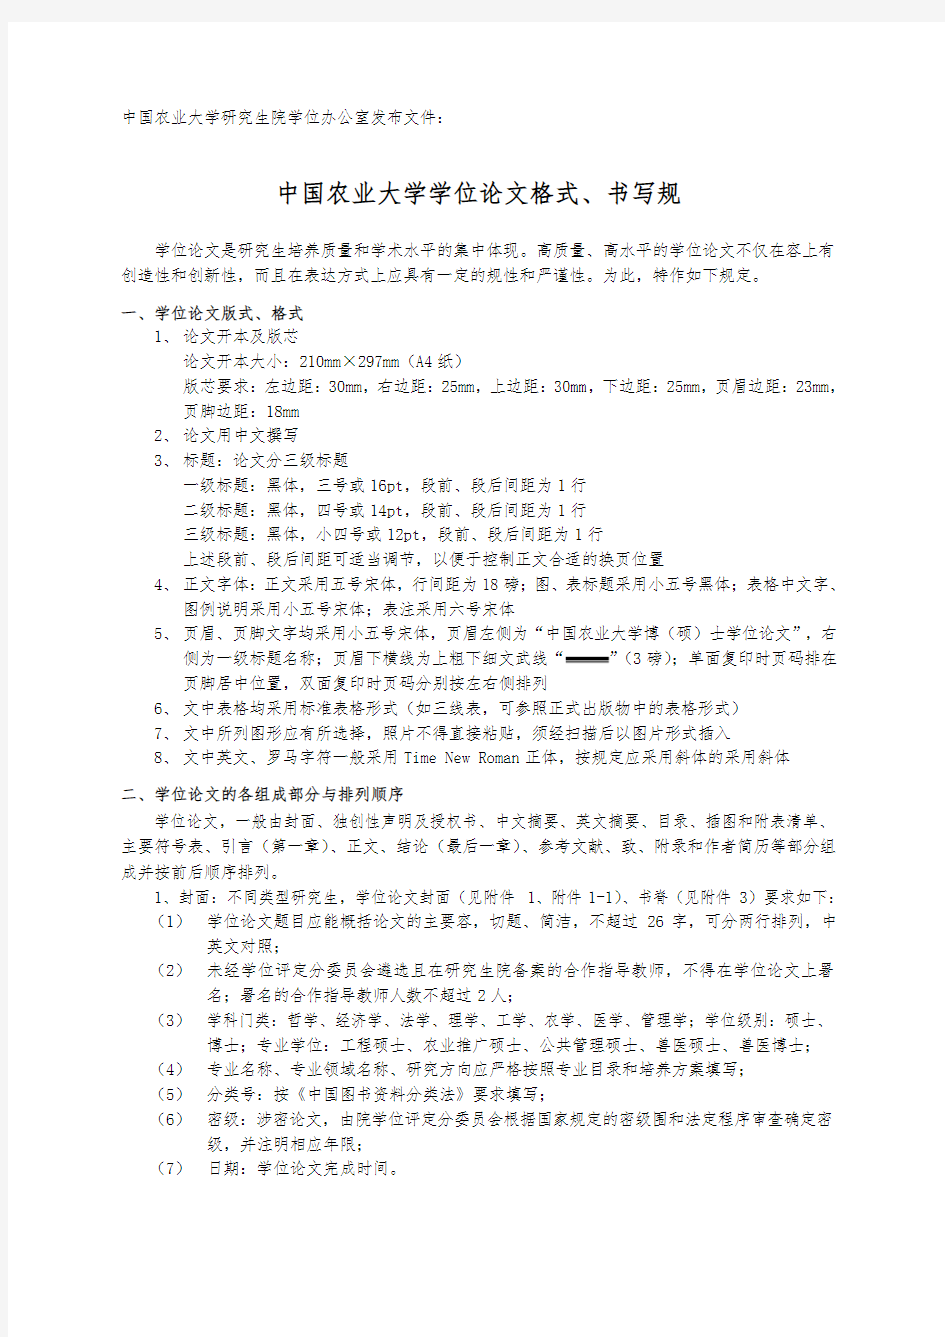 中国农业大学学位论文格式书写要求内容